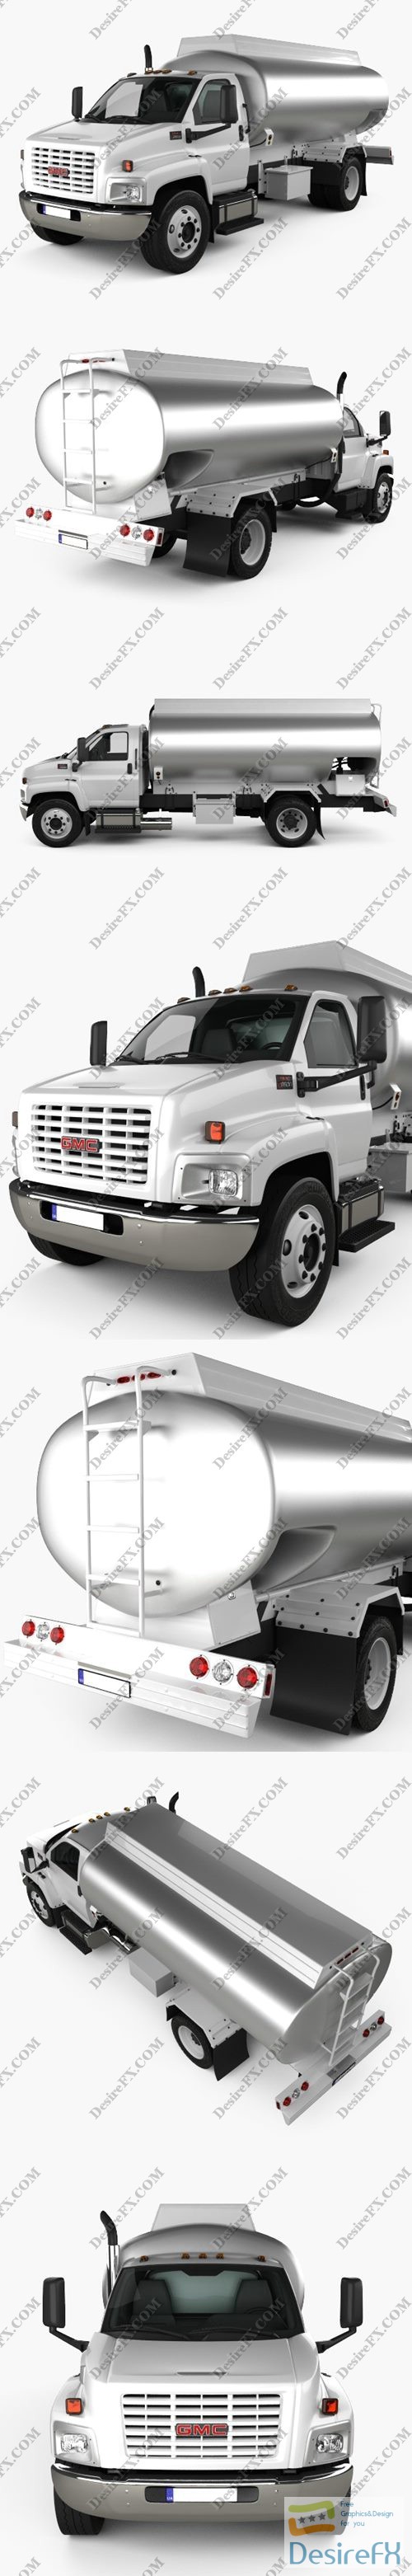 GMC Topkick C8500 Regular Cab Tanker Truck 2004 3D Model